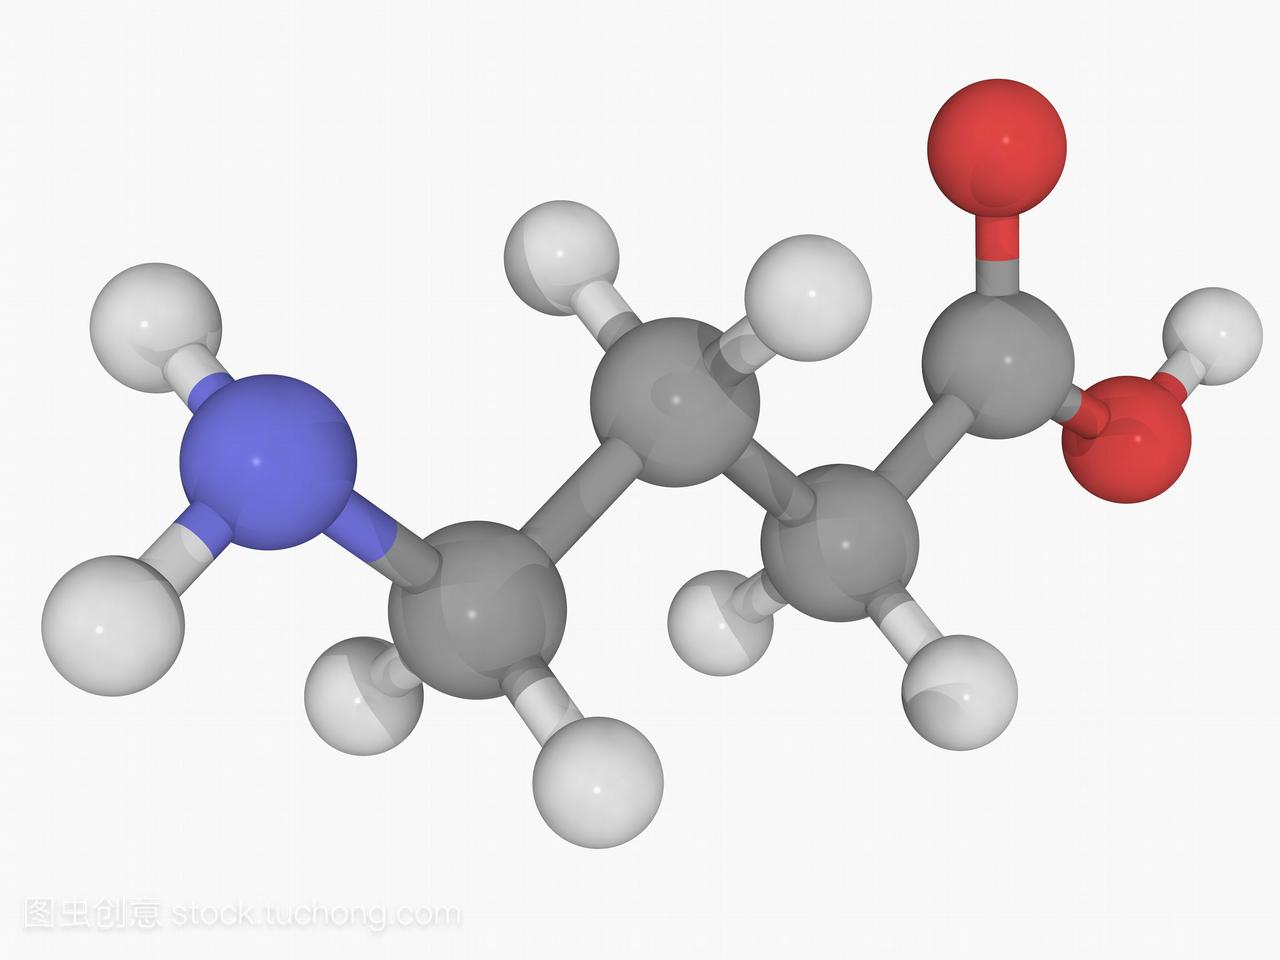 伽马氨基丁酸gaba,分子模型。哺乳动物中枢神